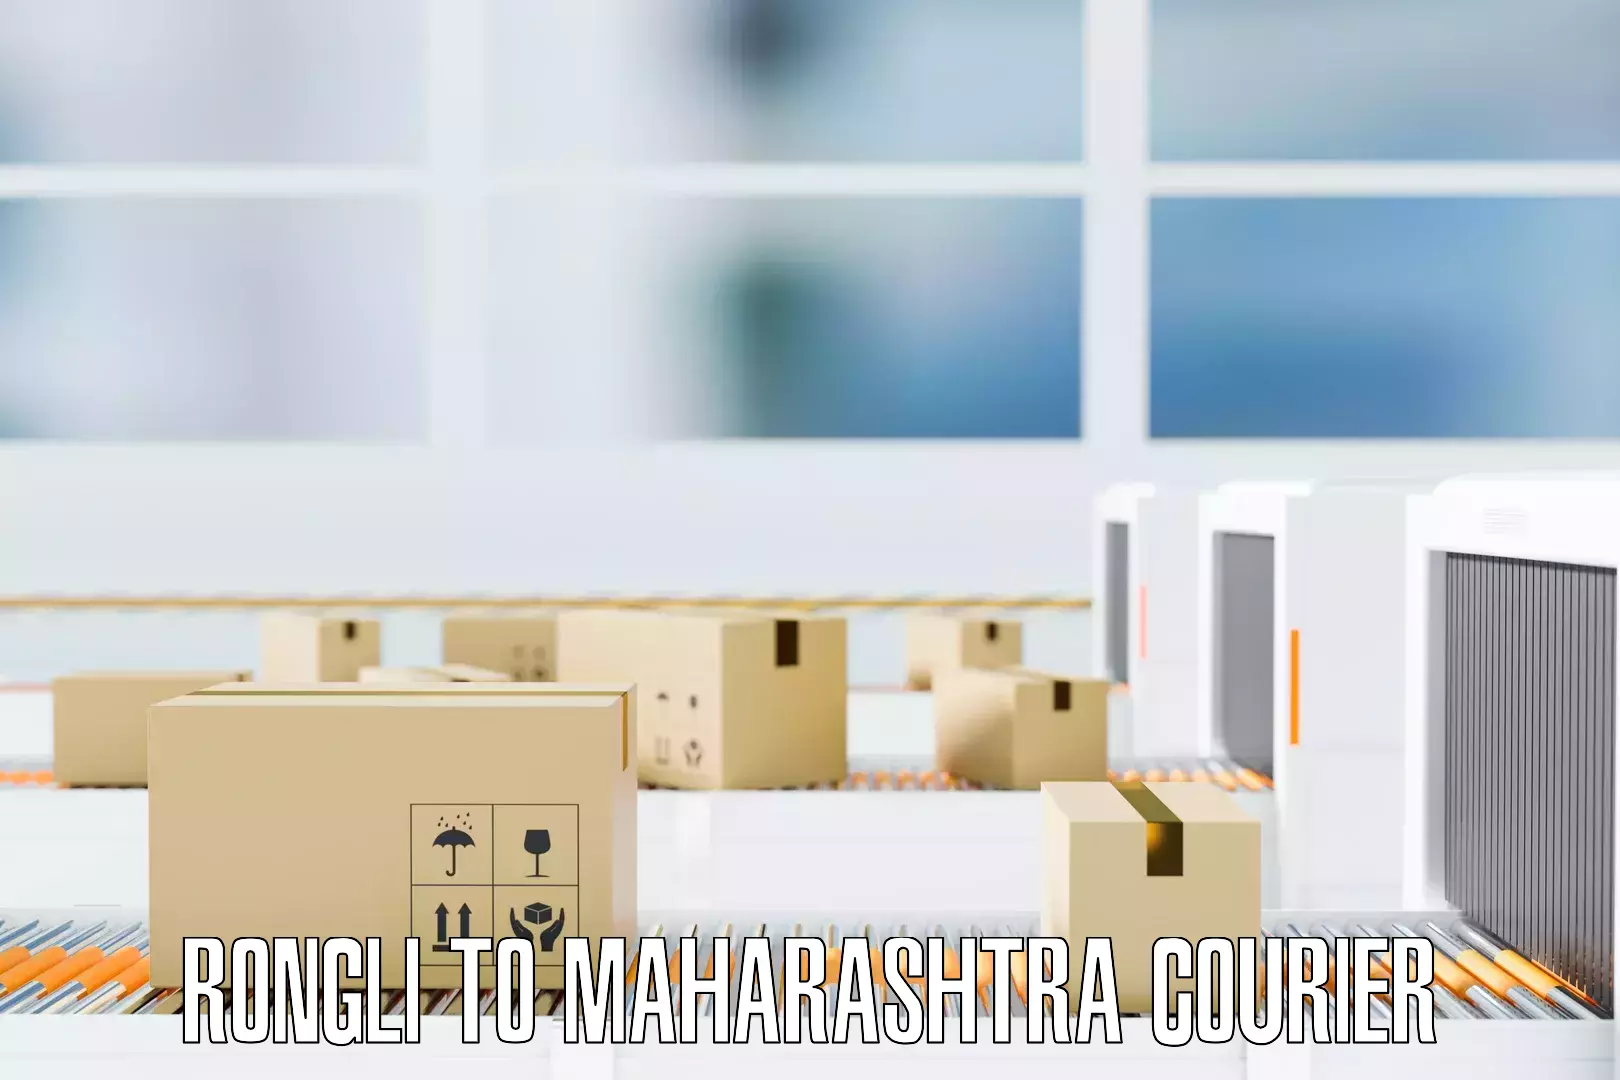 Efficient furniture shifting Rongli to Maharashtra